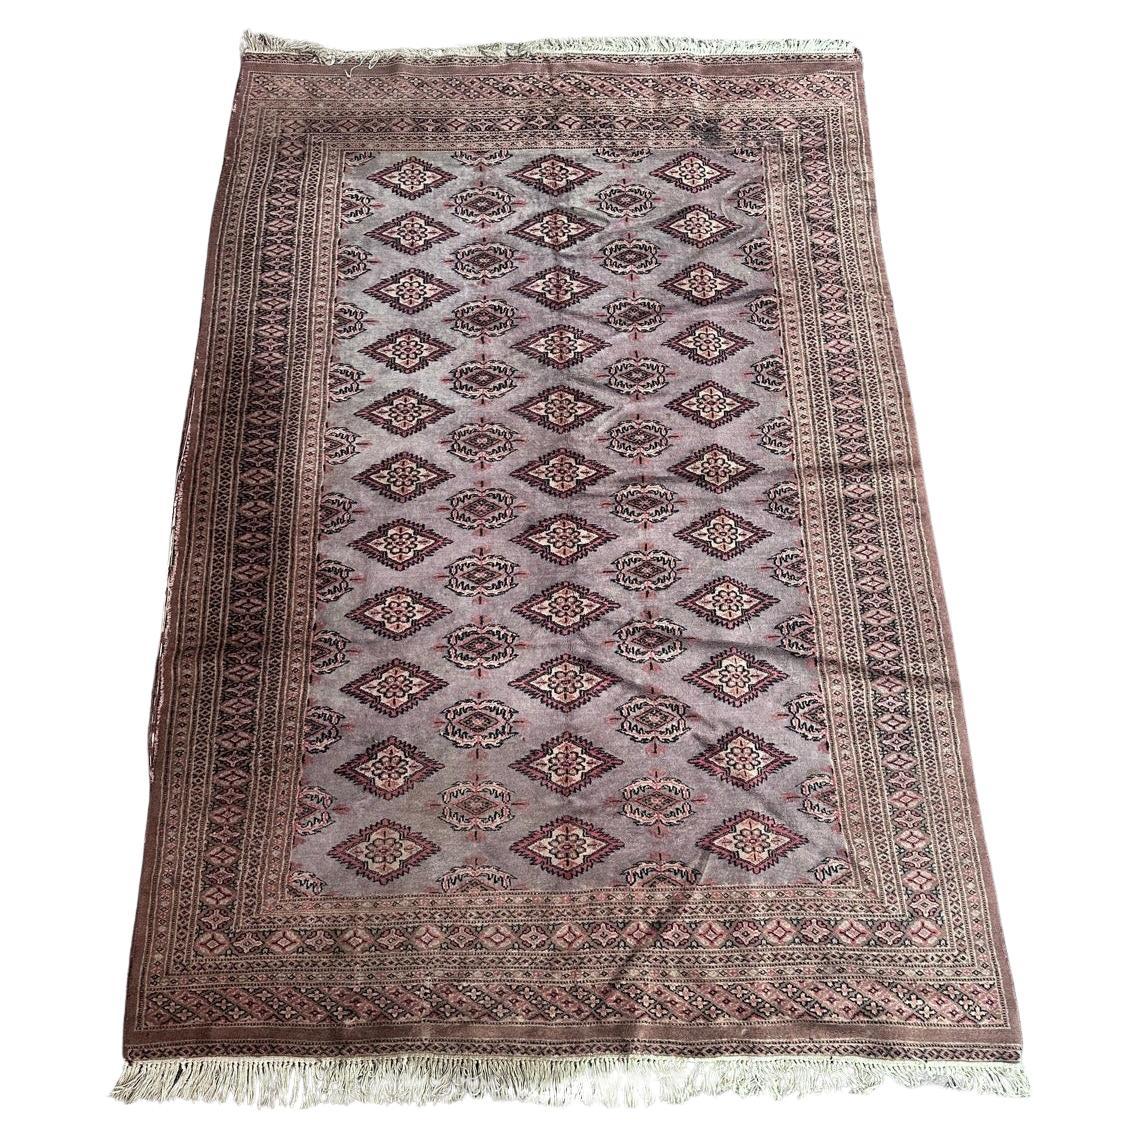 Bobyrug’s vintage Pakistani rug 